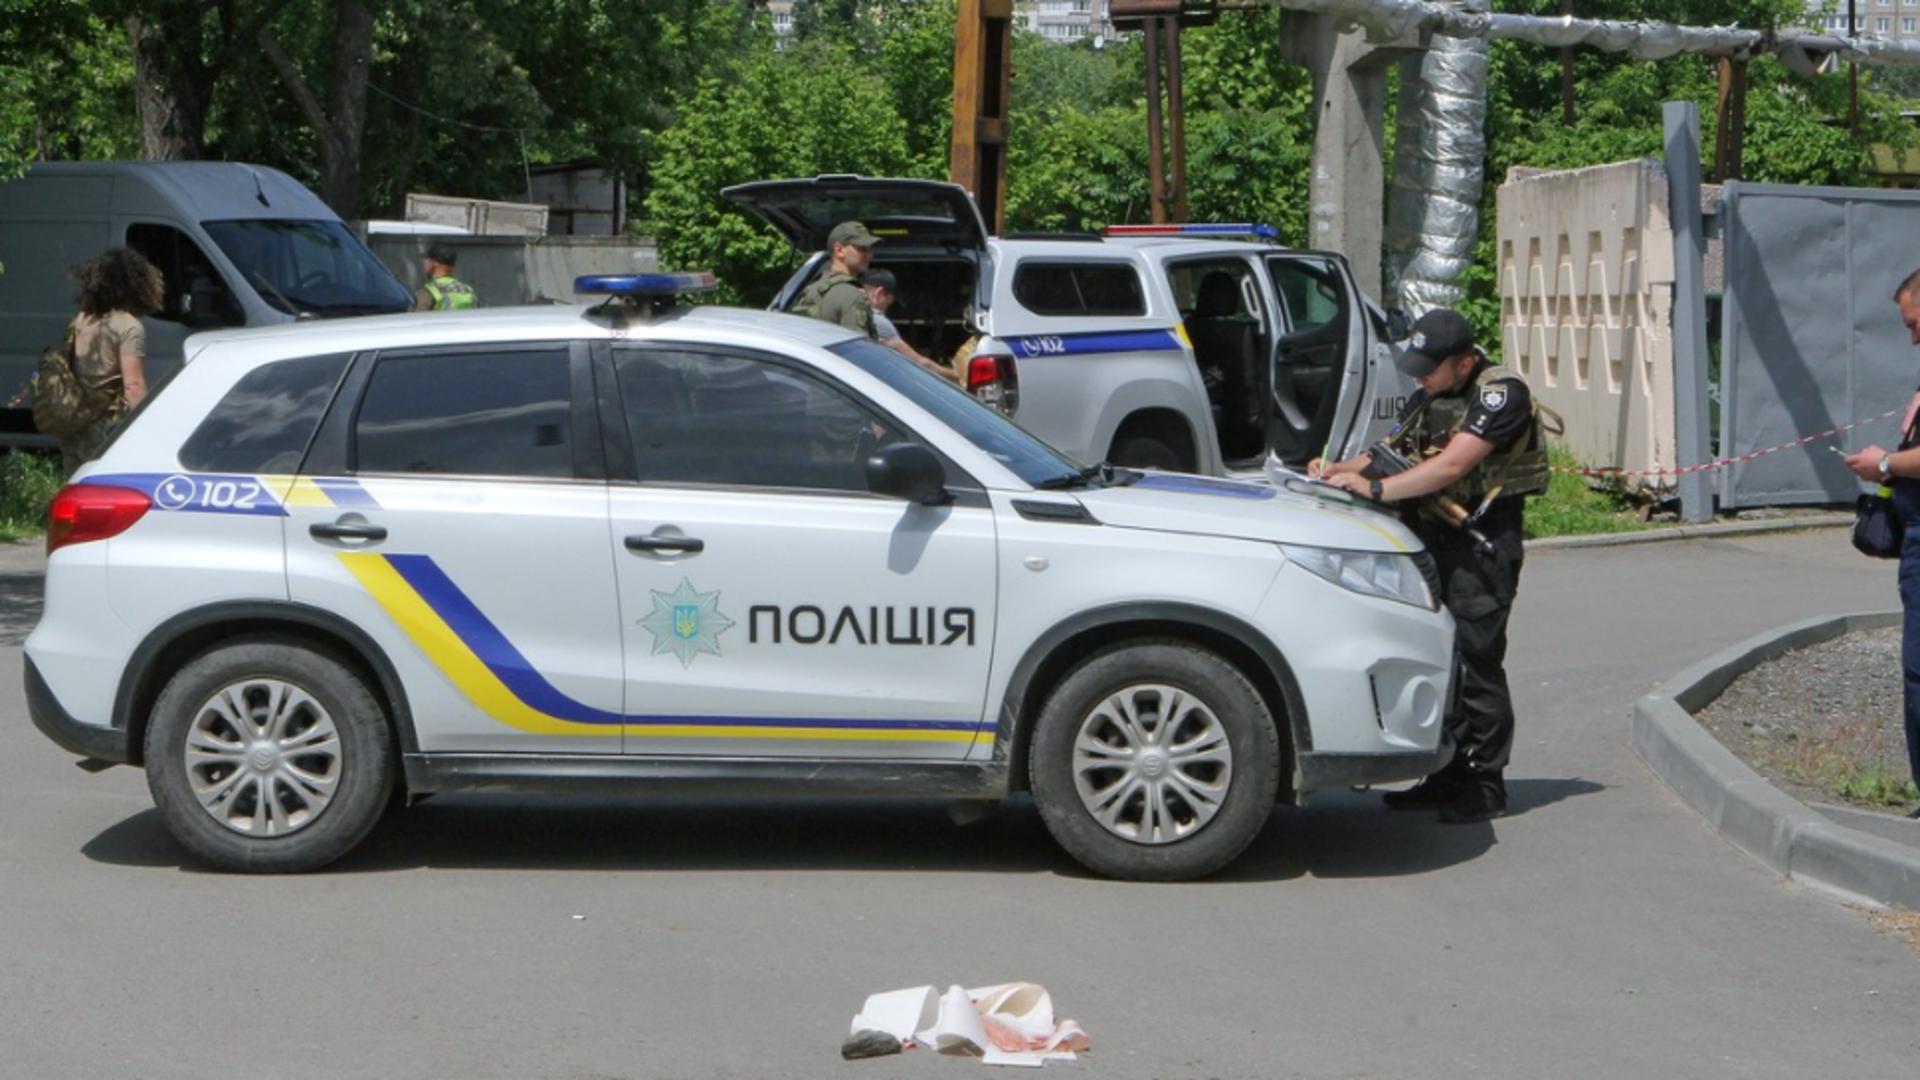 Foto ilustrativ - Poliția ucraineană (Profimedia)